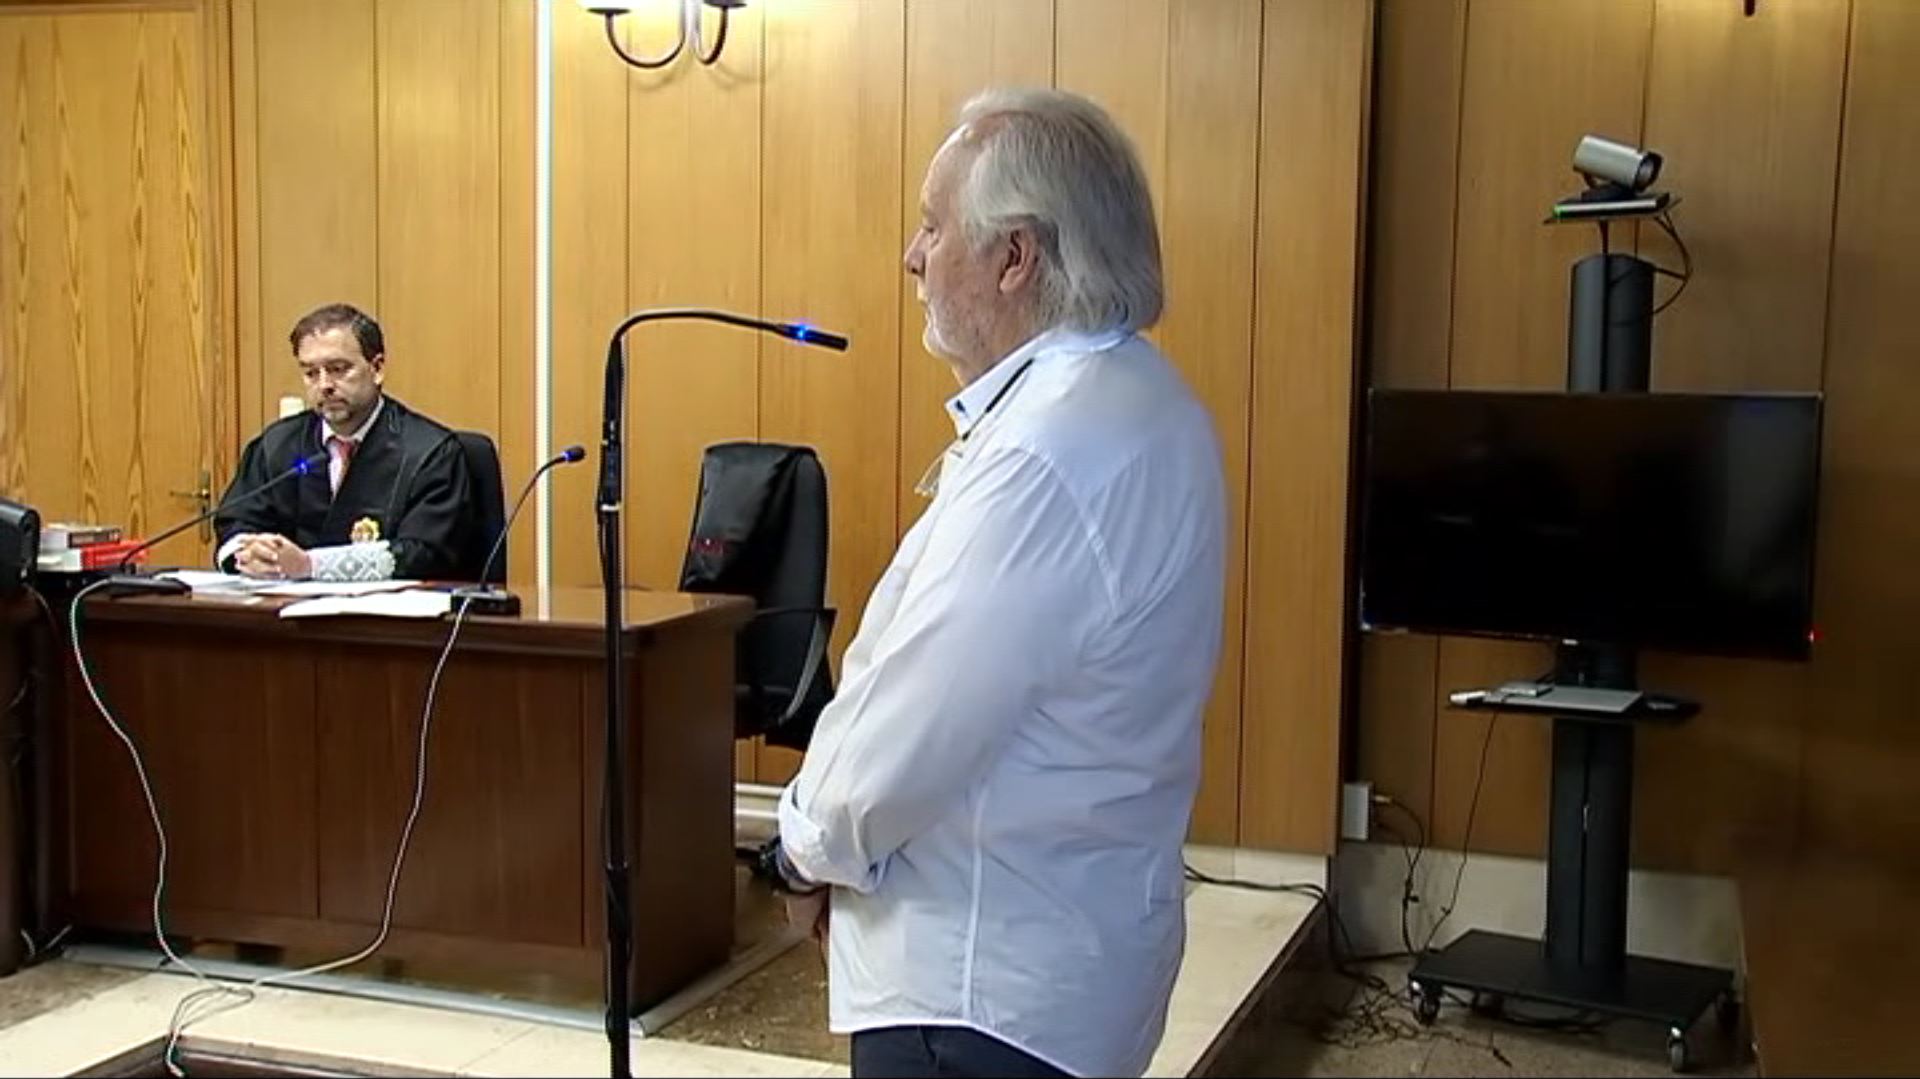 Cursach nega haver insultat el jutge Penalva quan va entregar el seu passaport